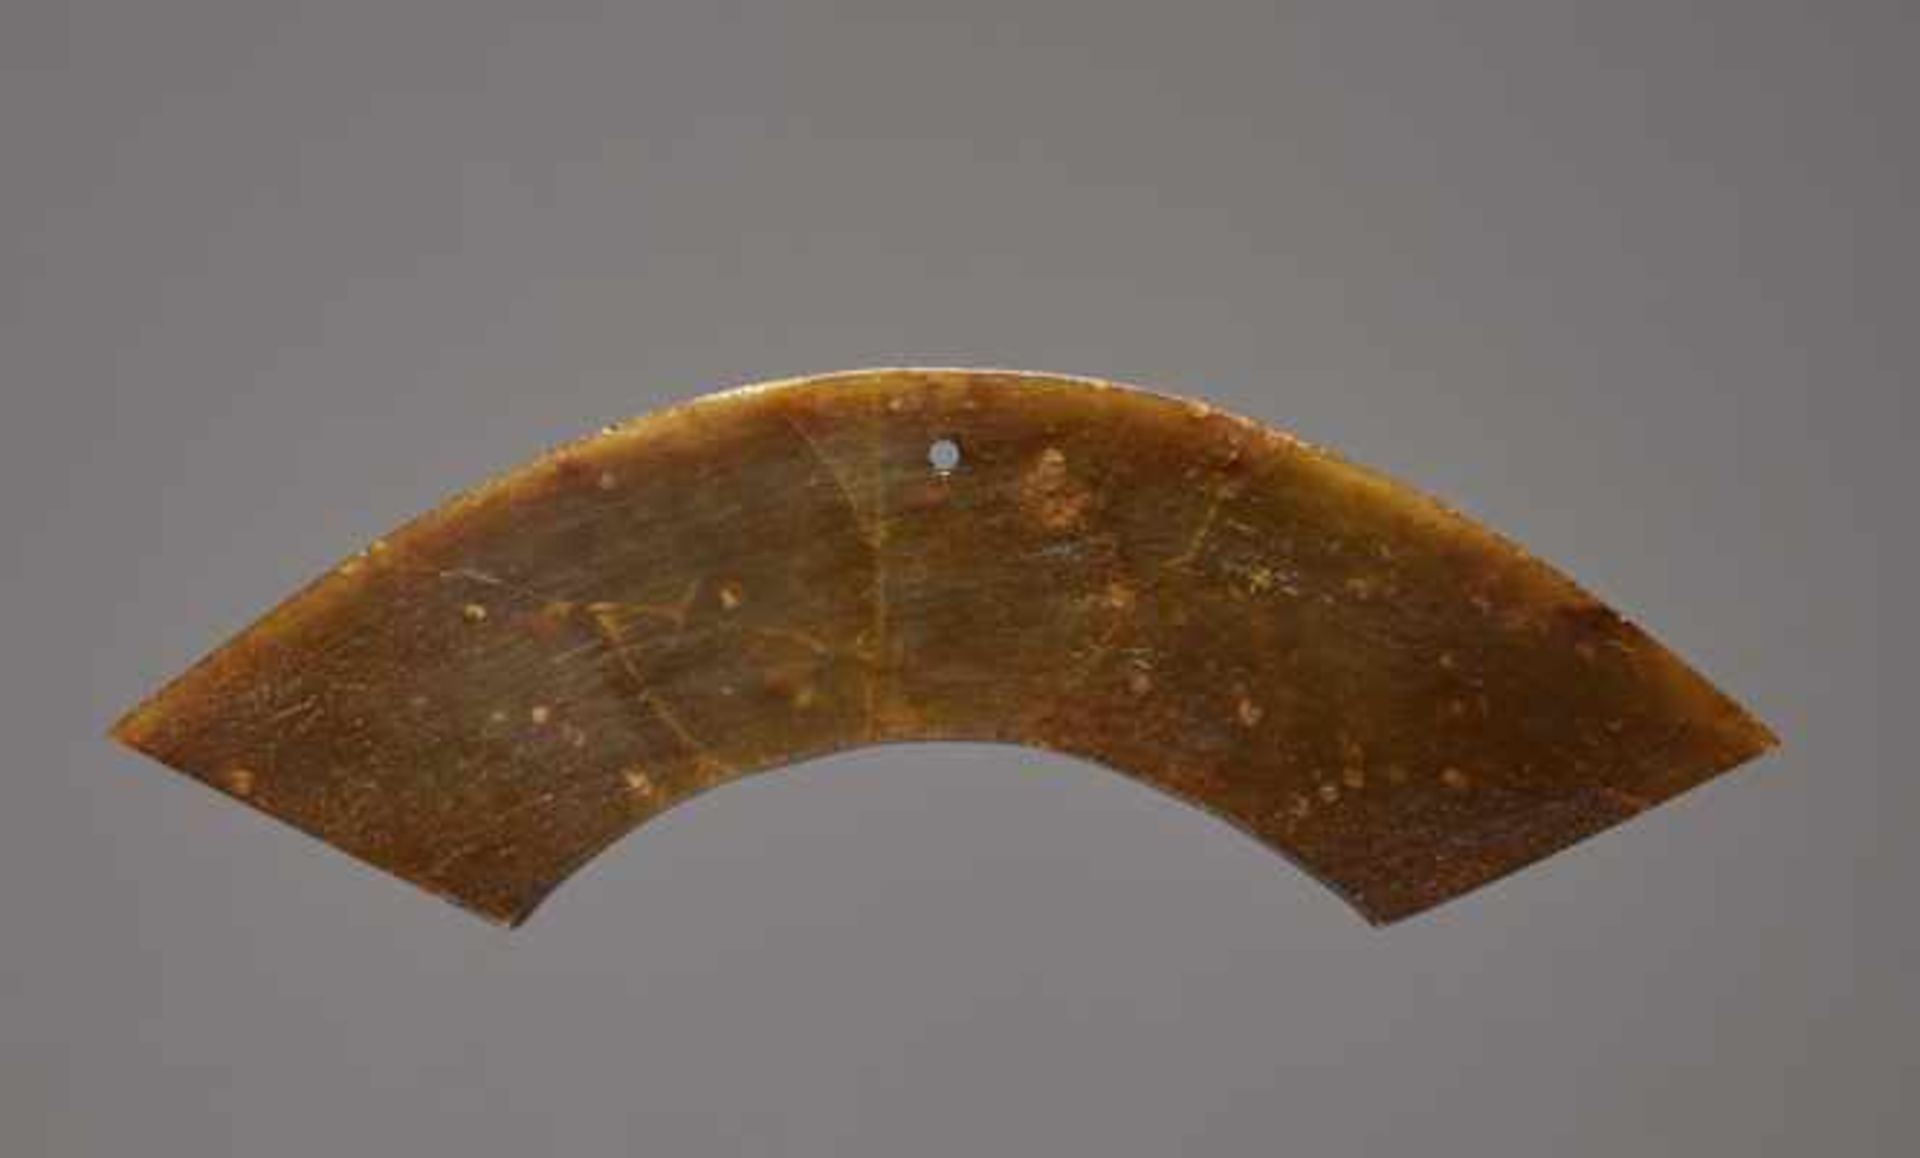 KONVOLUT MIT ZWEI ANHÄNGERN UND EINEMYUE73a: HUANG Jade. China, möglw. spätes Neolithikum, - Image 8 of 13